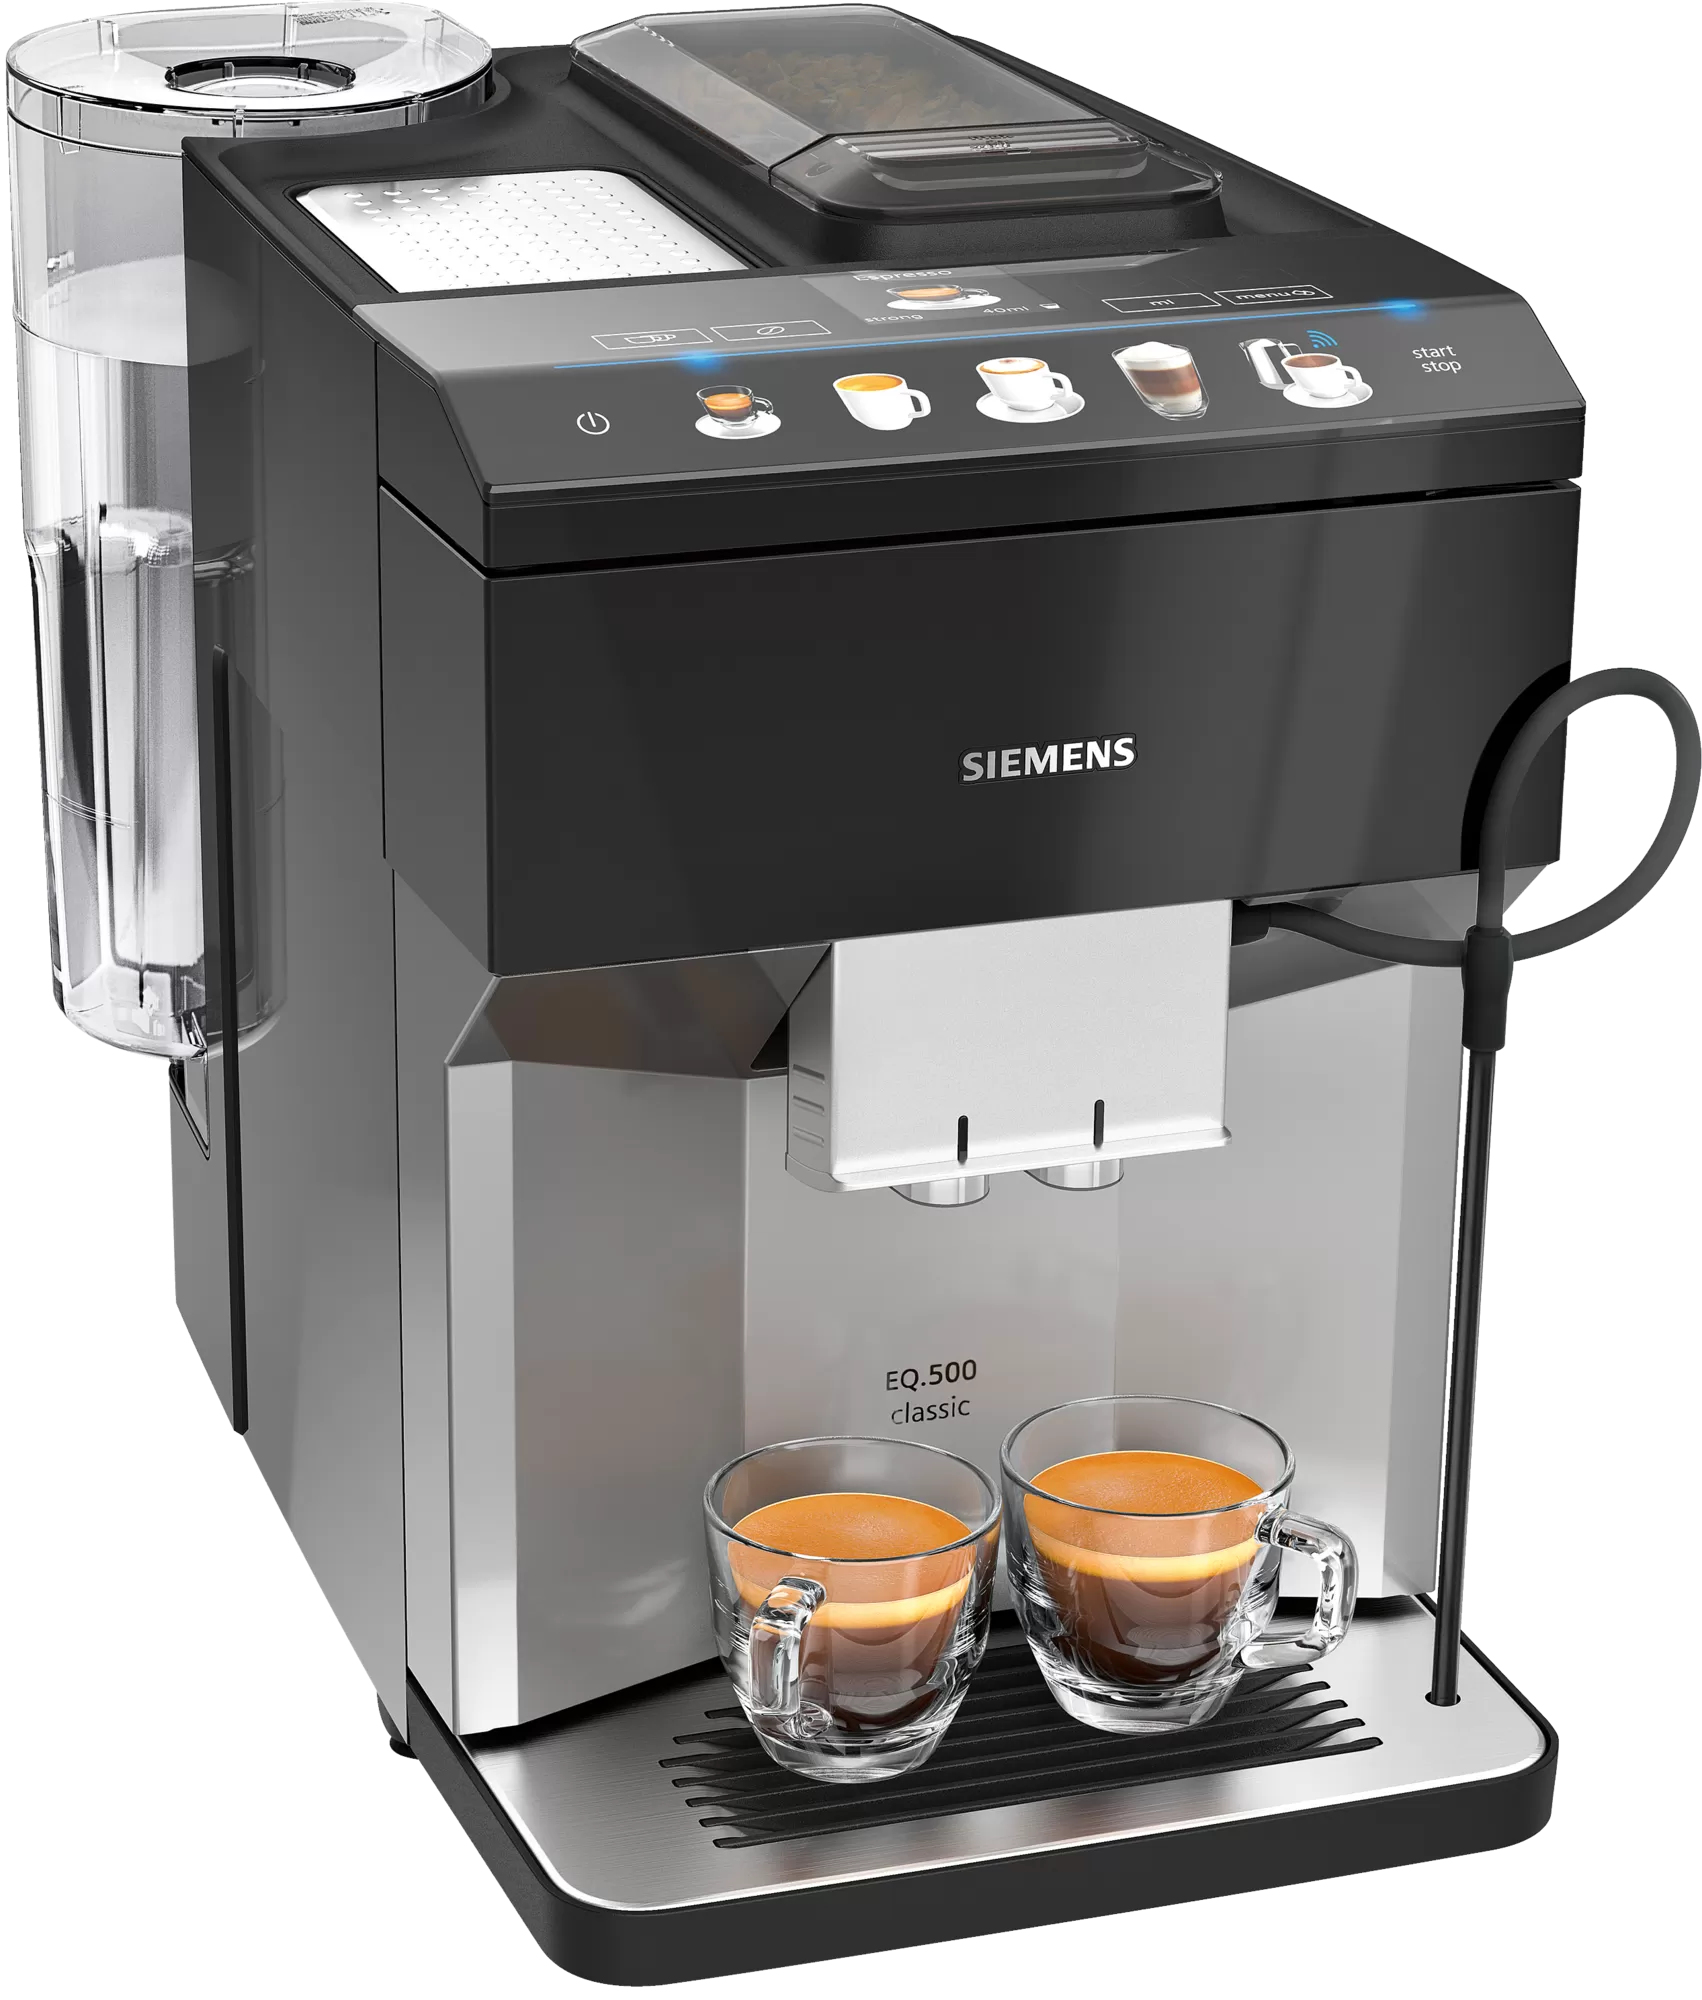 Siemens EQ.500 TP507RX4 coffee maker